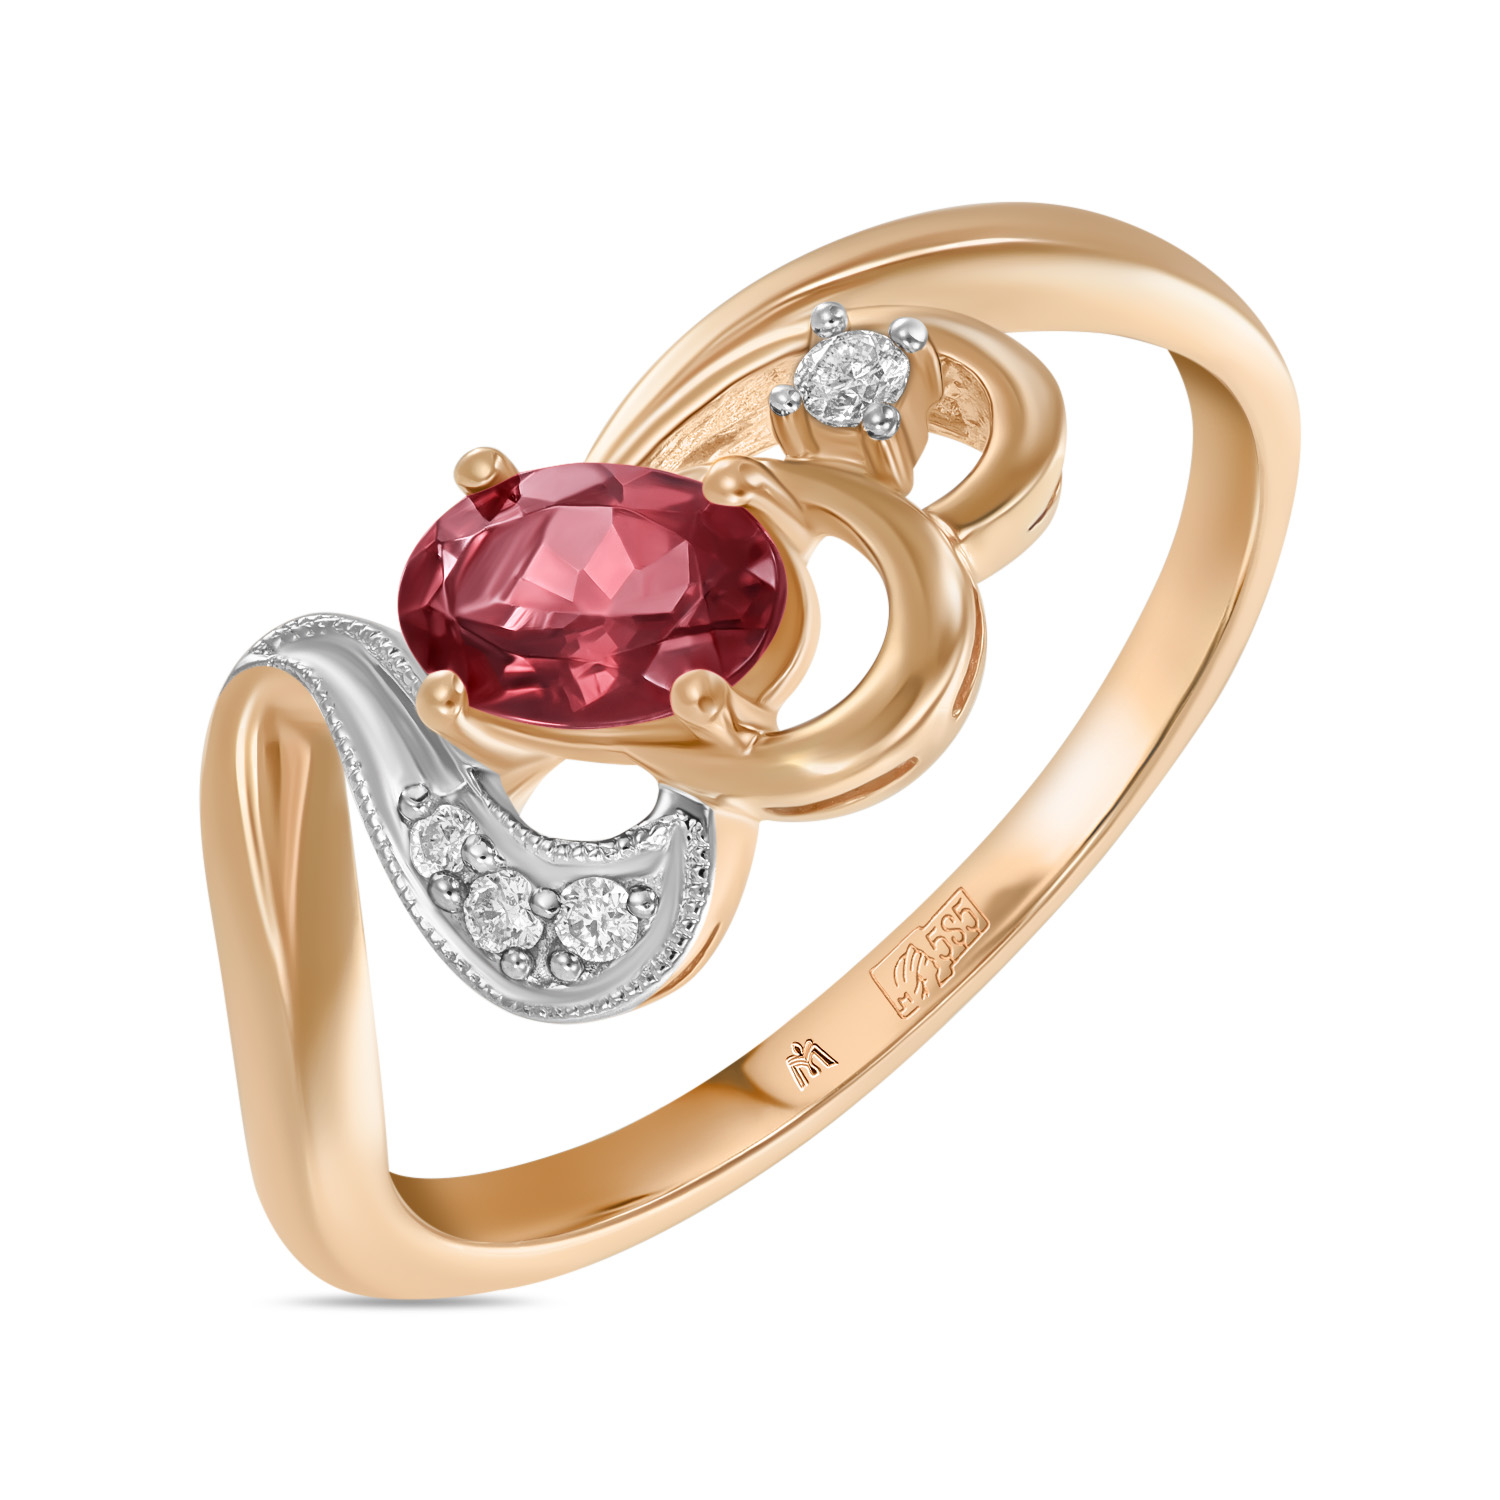 Кольца МЮЗ Золотое кольцо с бриллиантами и турмалином кольца мюз золотое кольцо с топазом бриллиантами турмалином и хромдиопсидами